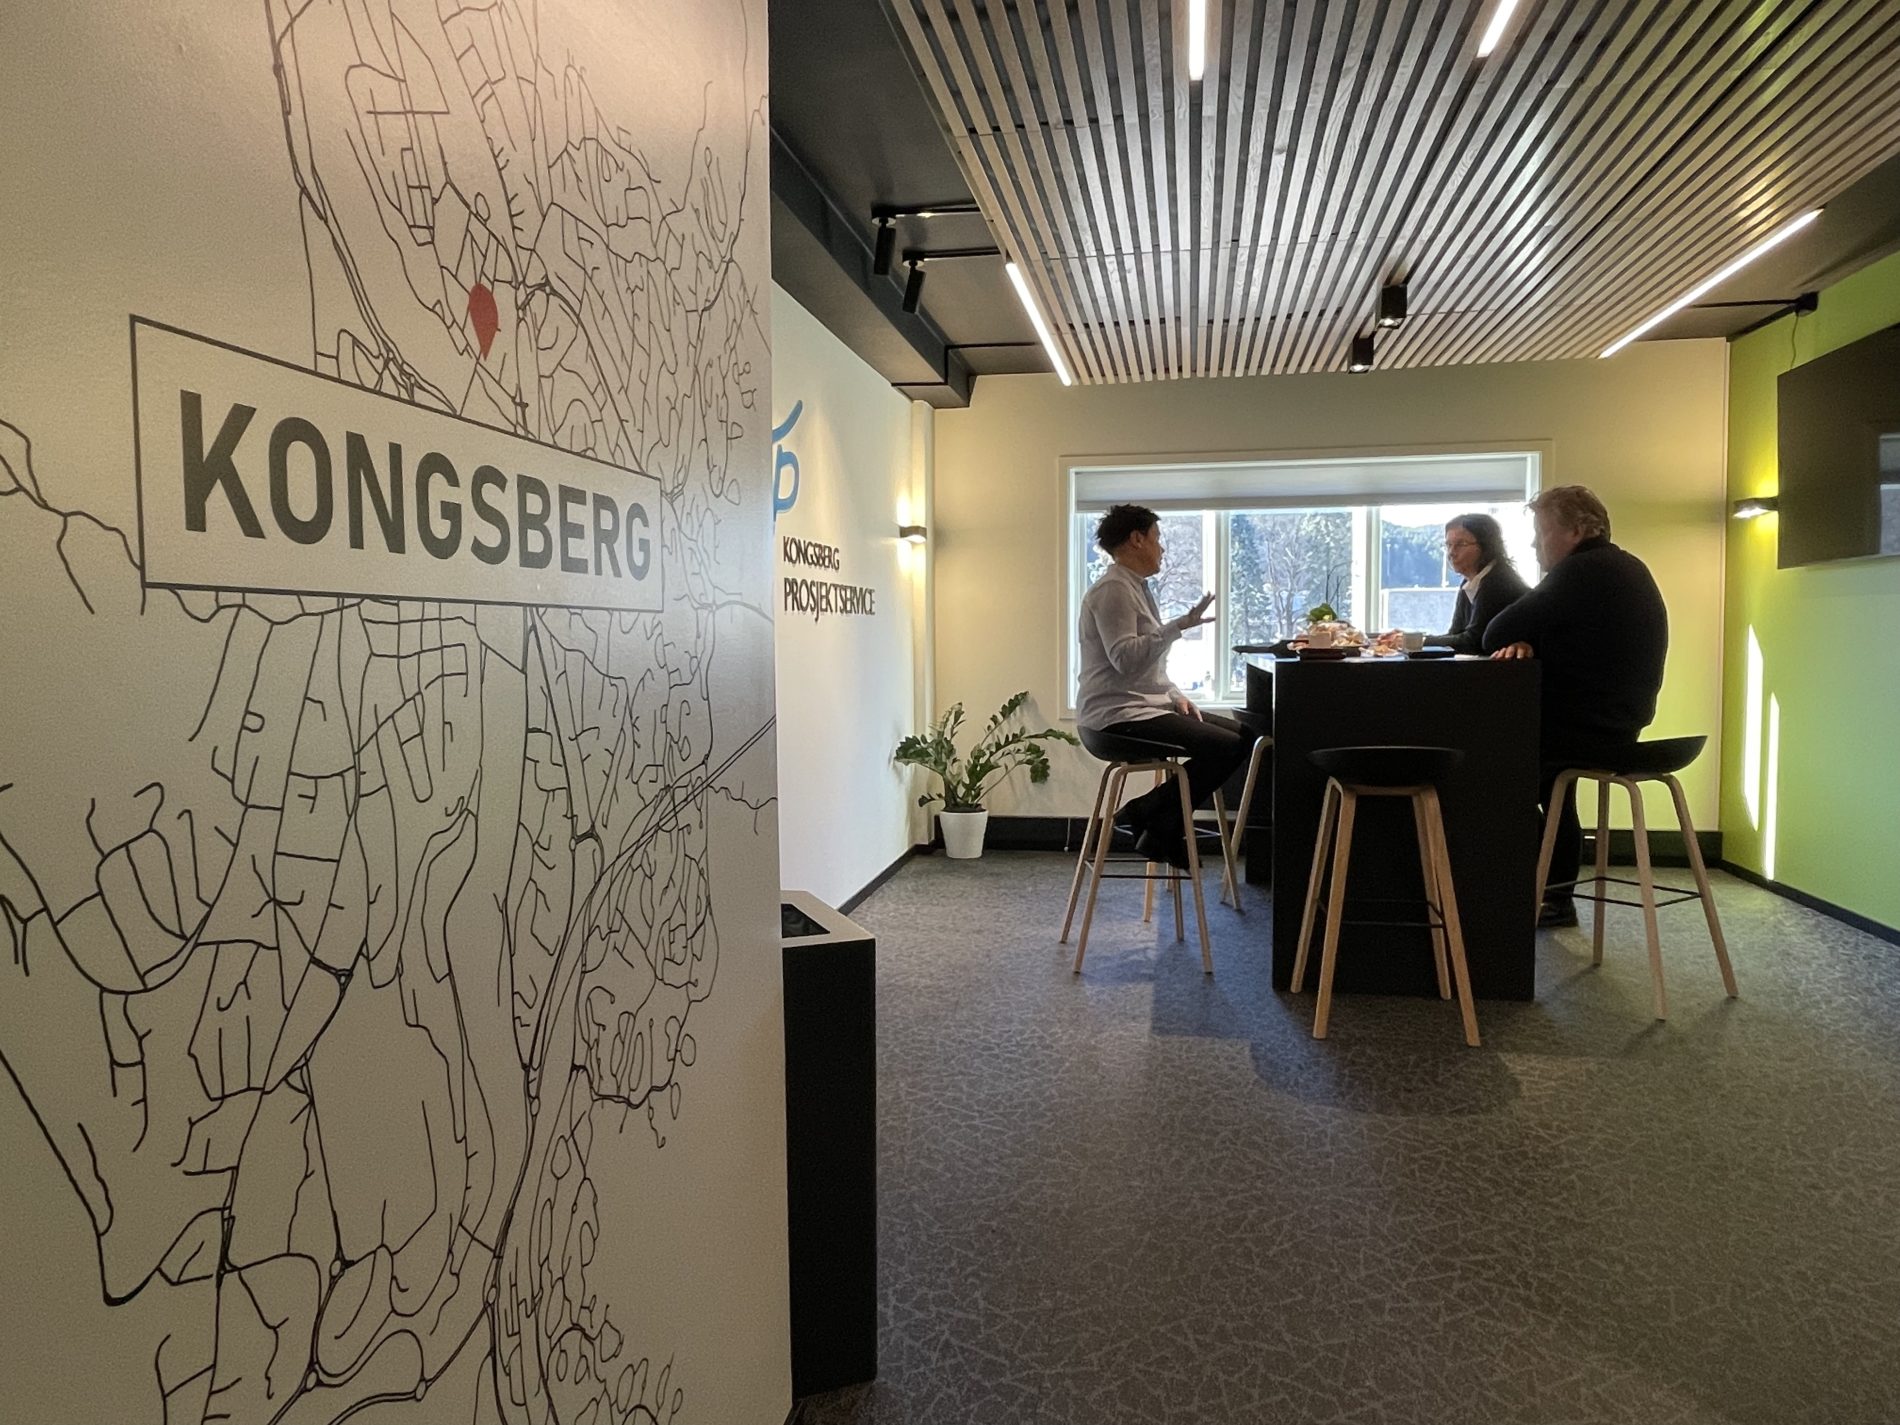 Renovering og oppgradering av kontorlokaler i Kongsberg